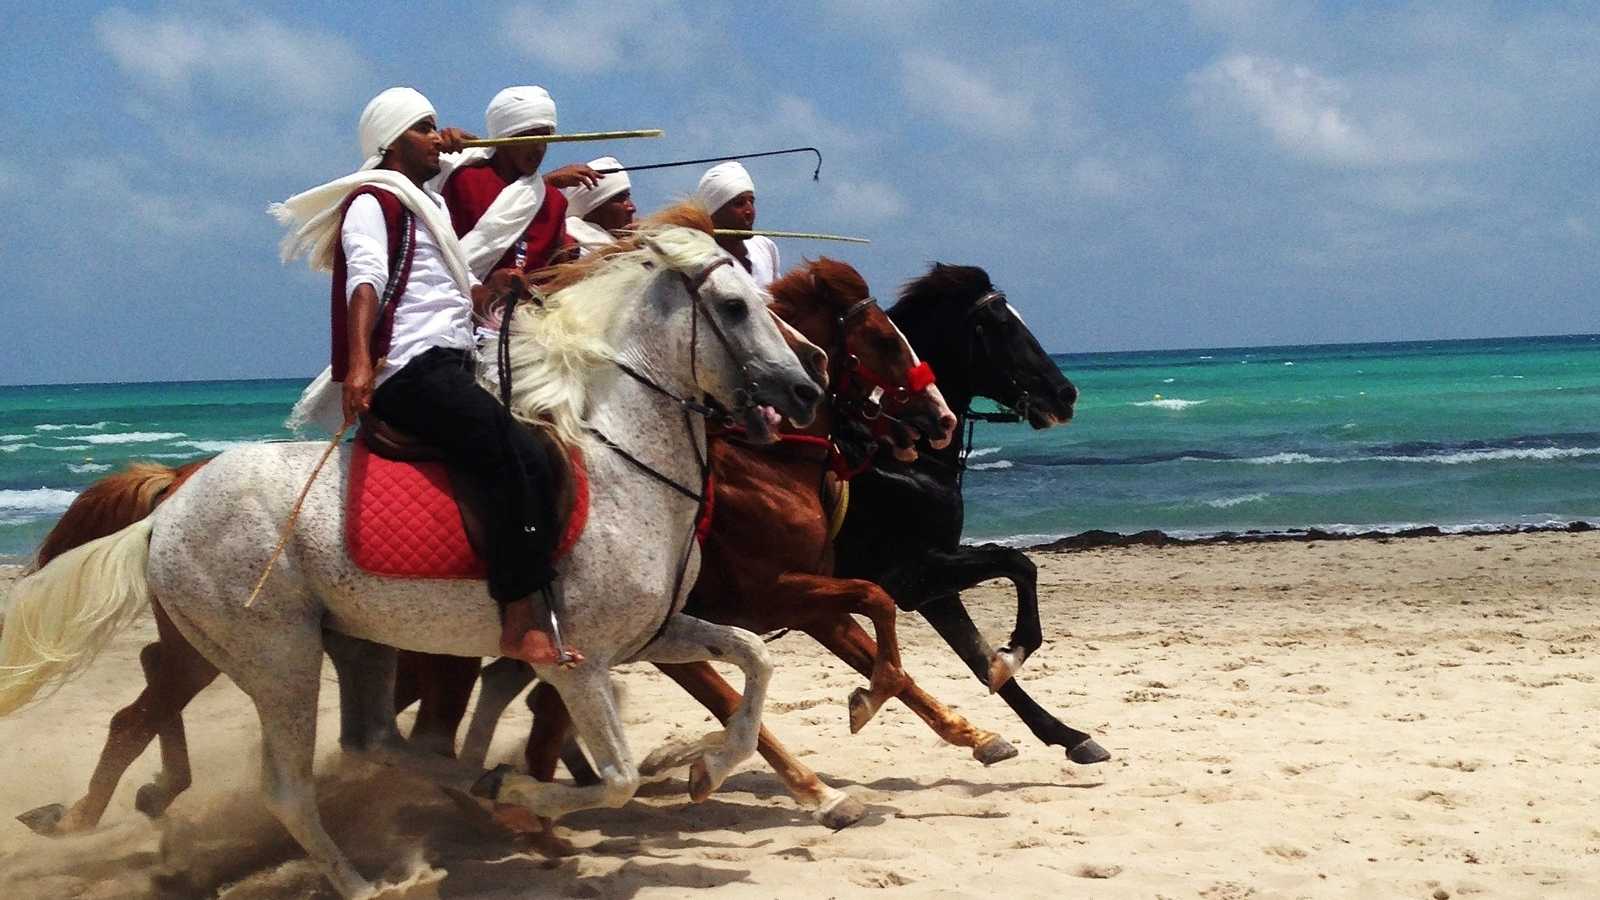 La fantasia et la mer. Une image pour touristes de la Tunisie éternelle. Et du passé ?  (c) Pixabay